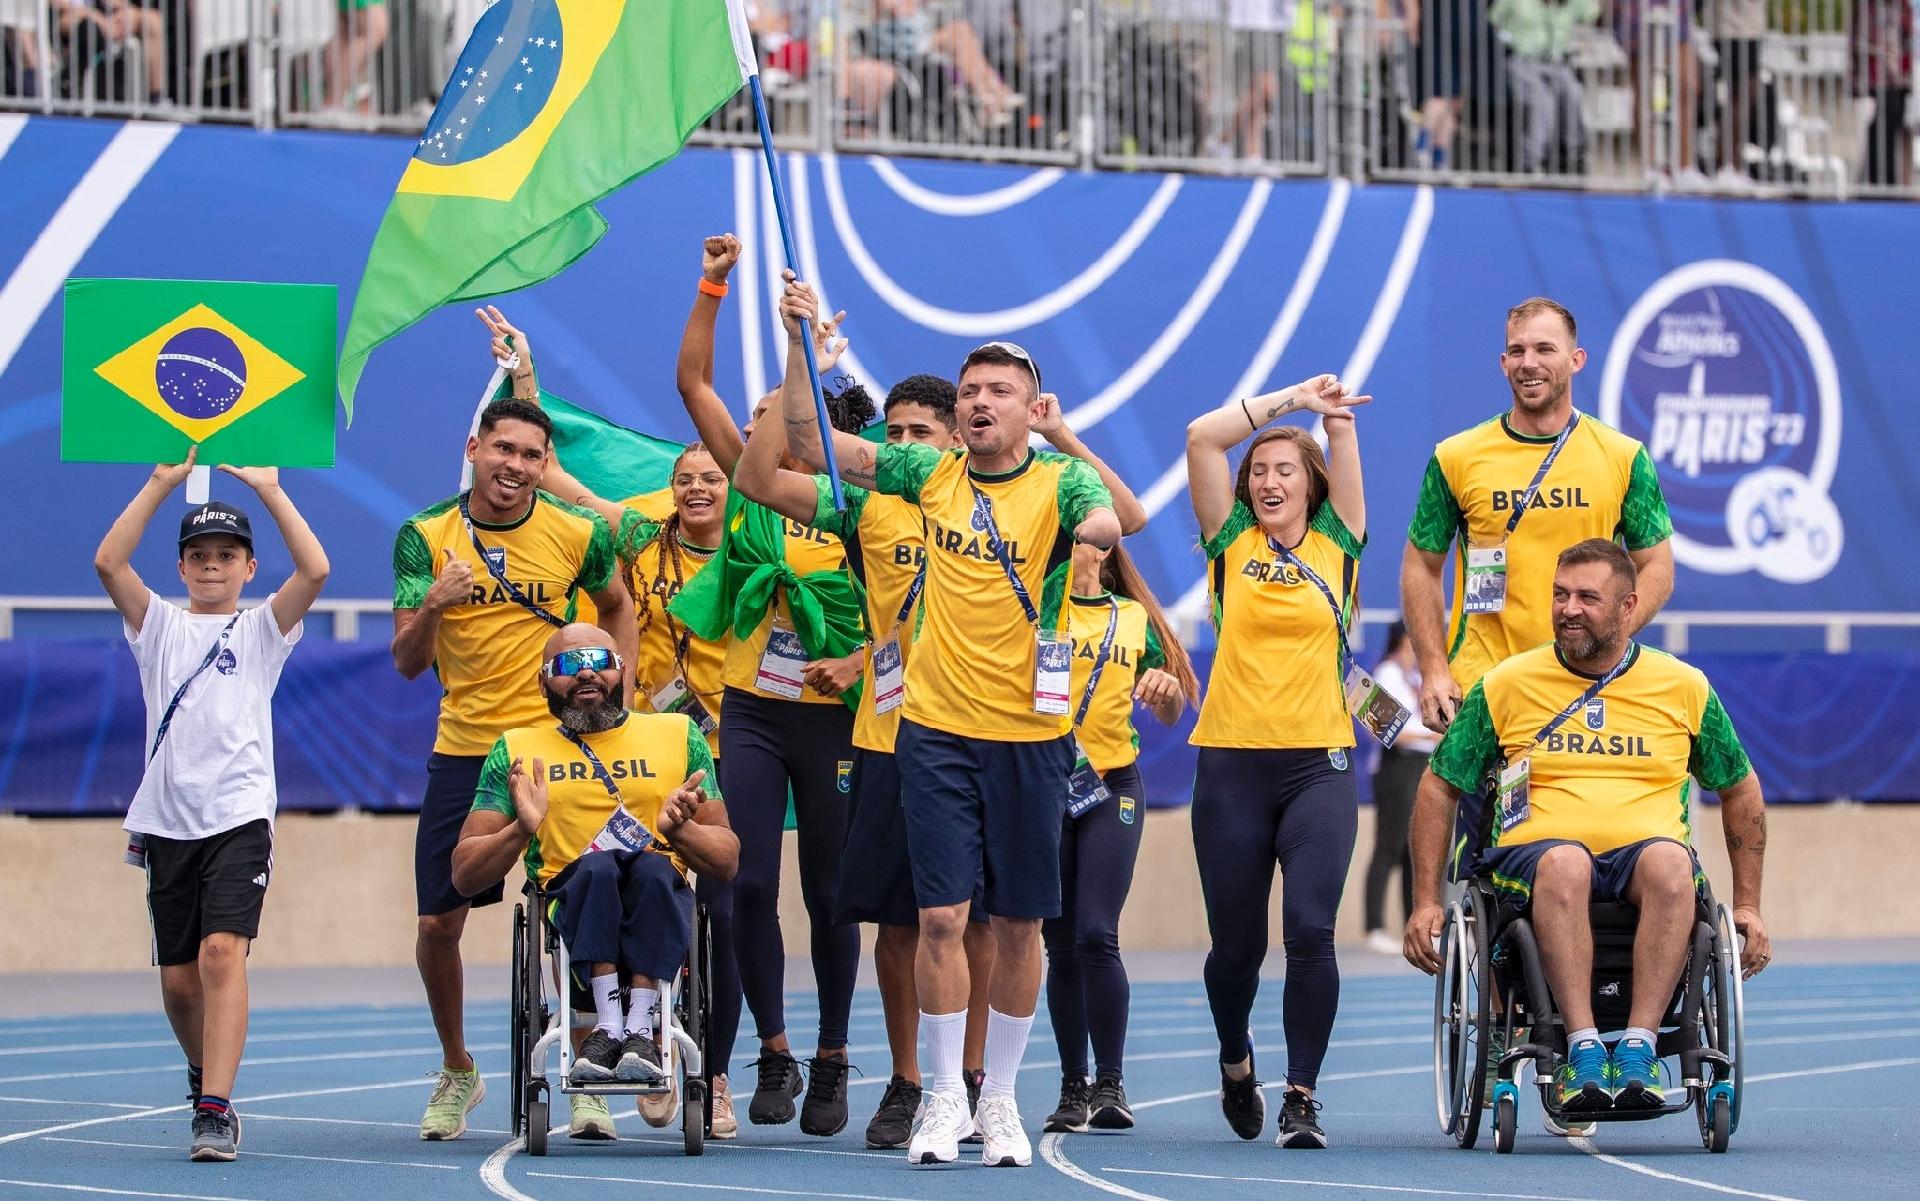 #MundialParalímpico: Brasil conquista 8 medalhas de ouro, 5 de prata e 8 de bronze e está em 2º lugar geral